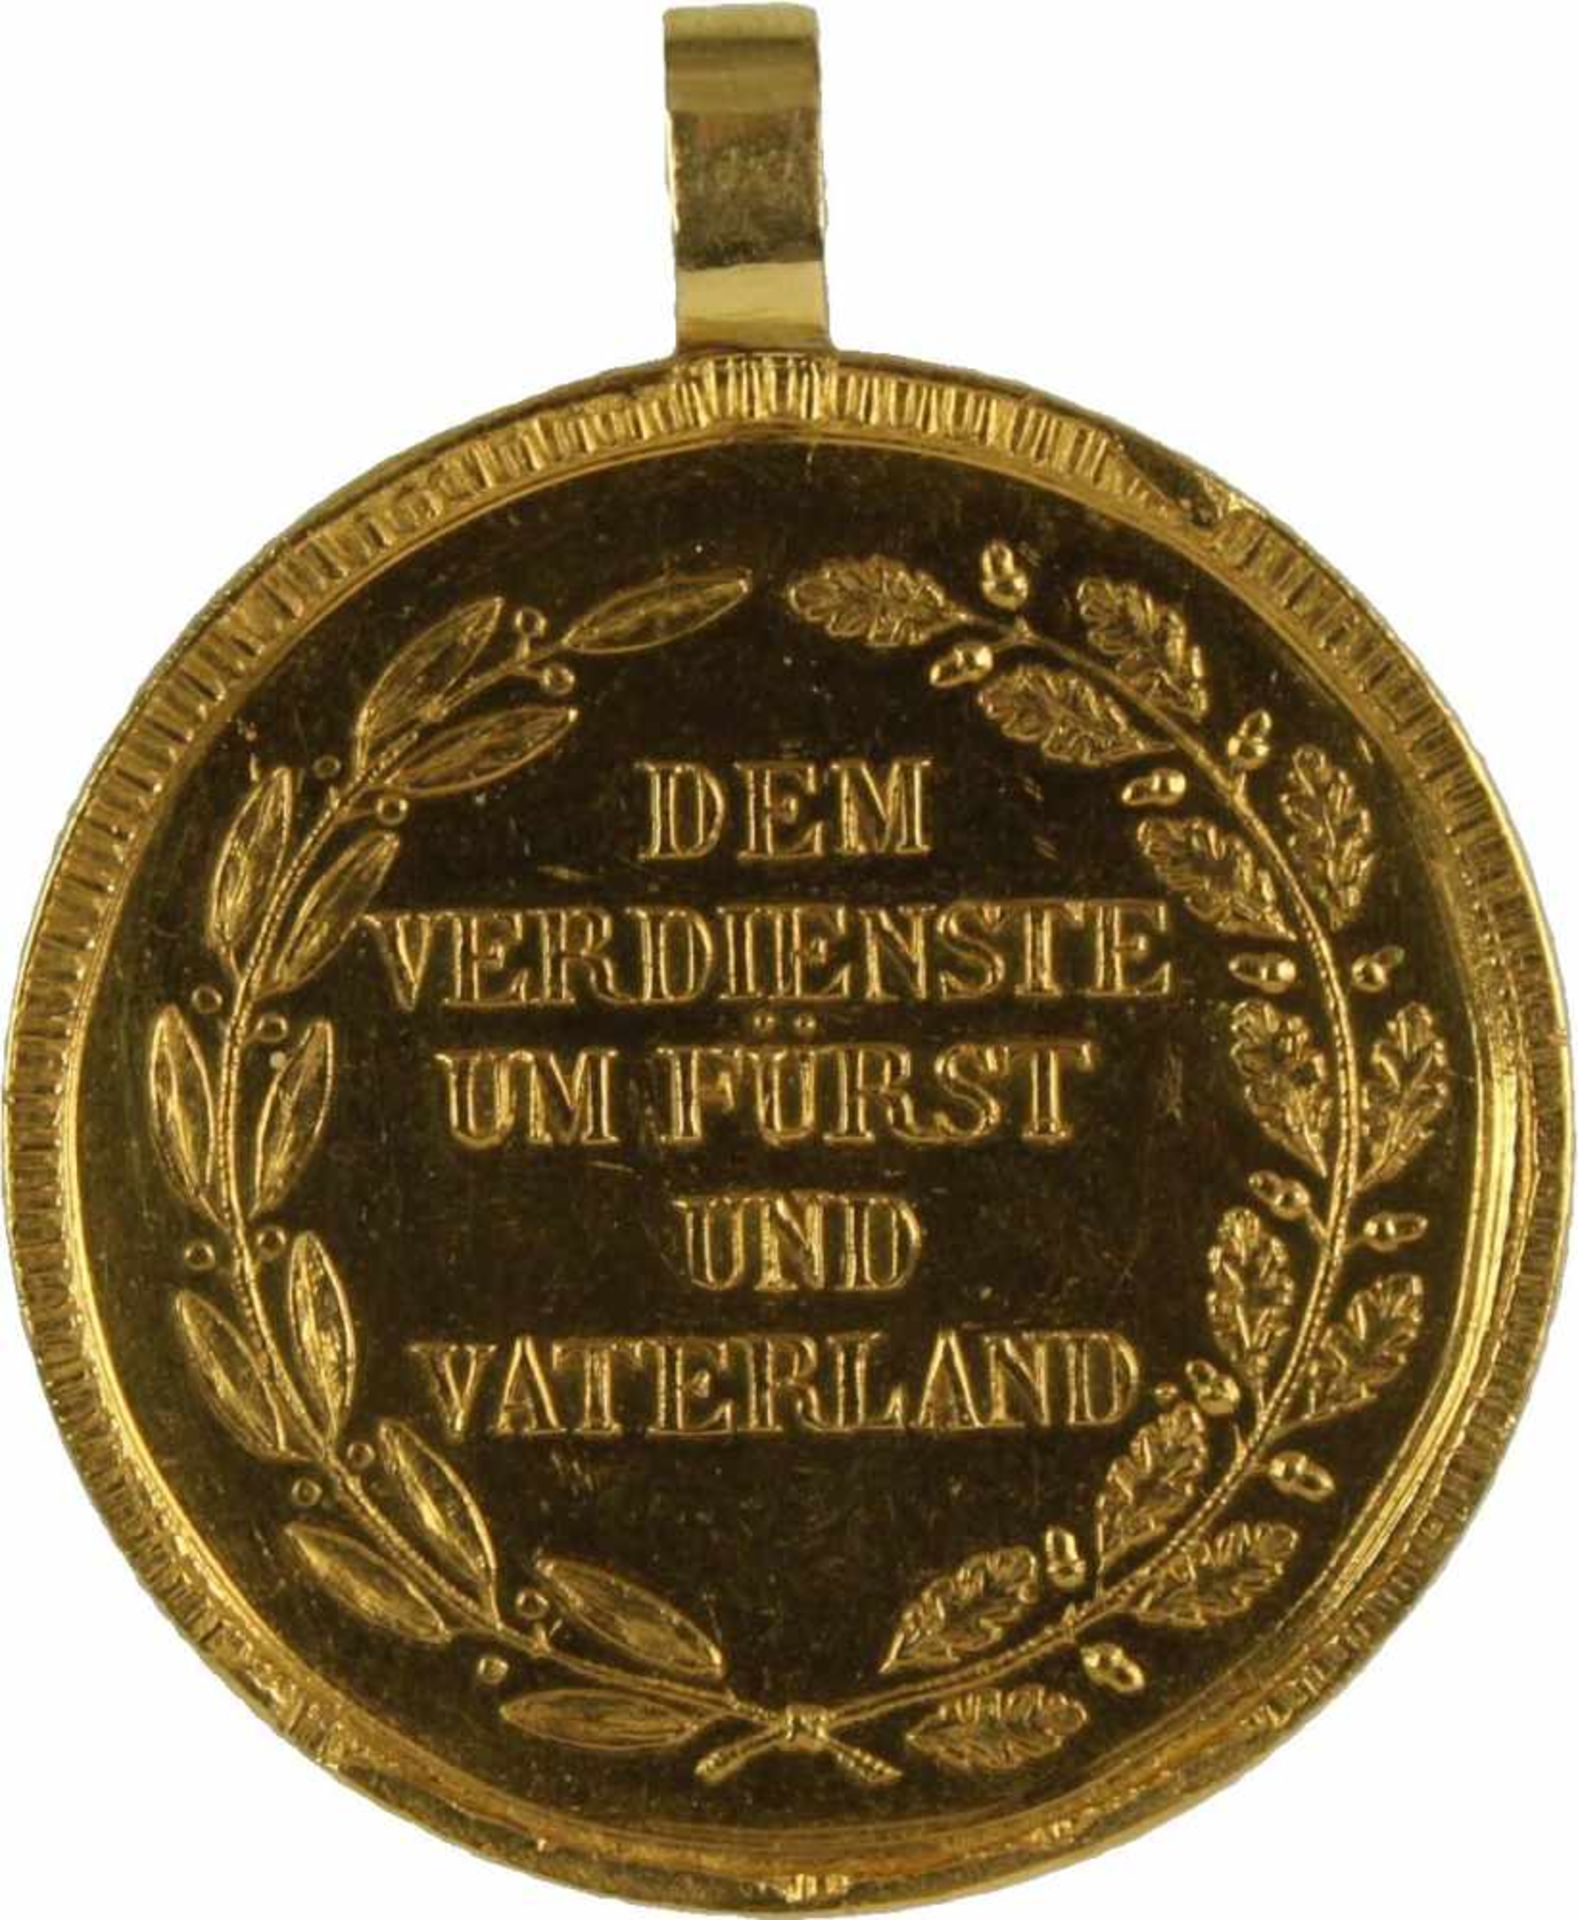 Goldene Zivilverdienstmedaille, Brustbild König Max Joseph I., verliehen 1806-1840. Medaille Gold, - Bild 3 aus 4